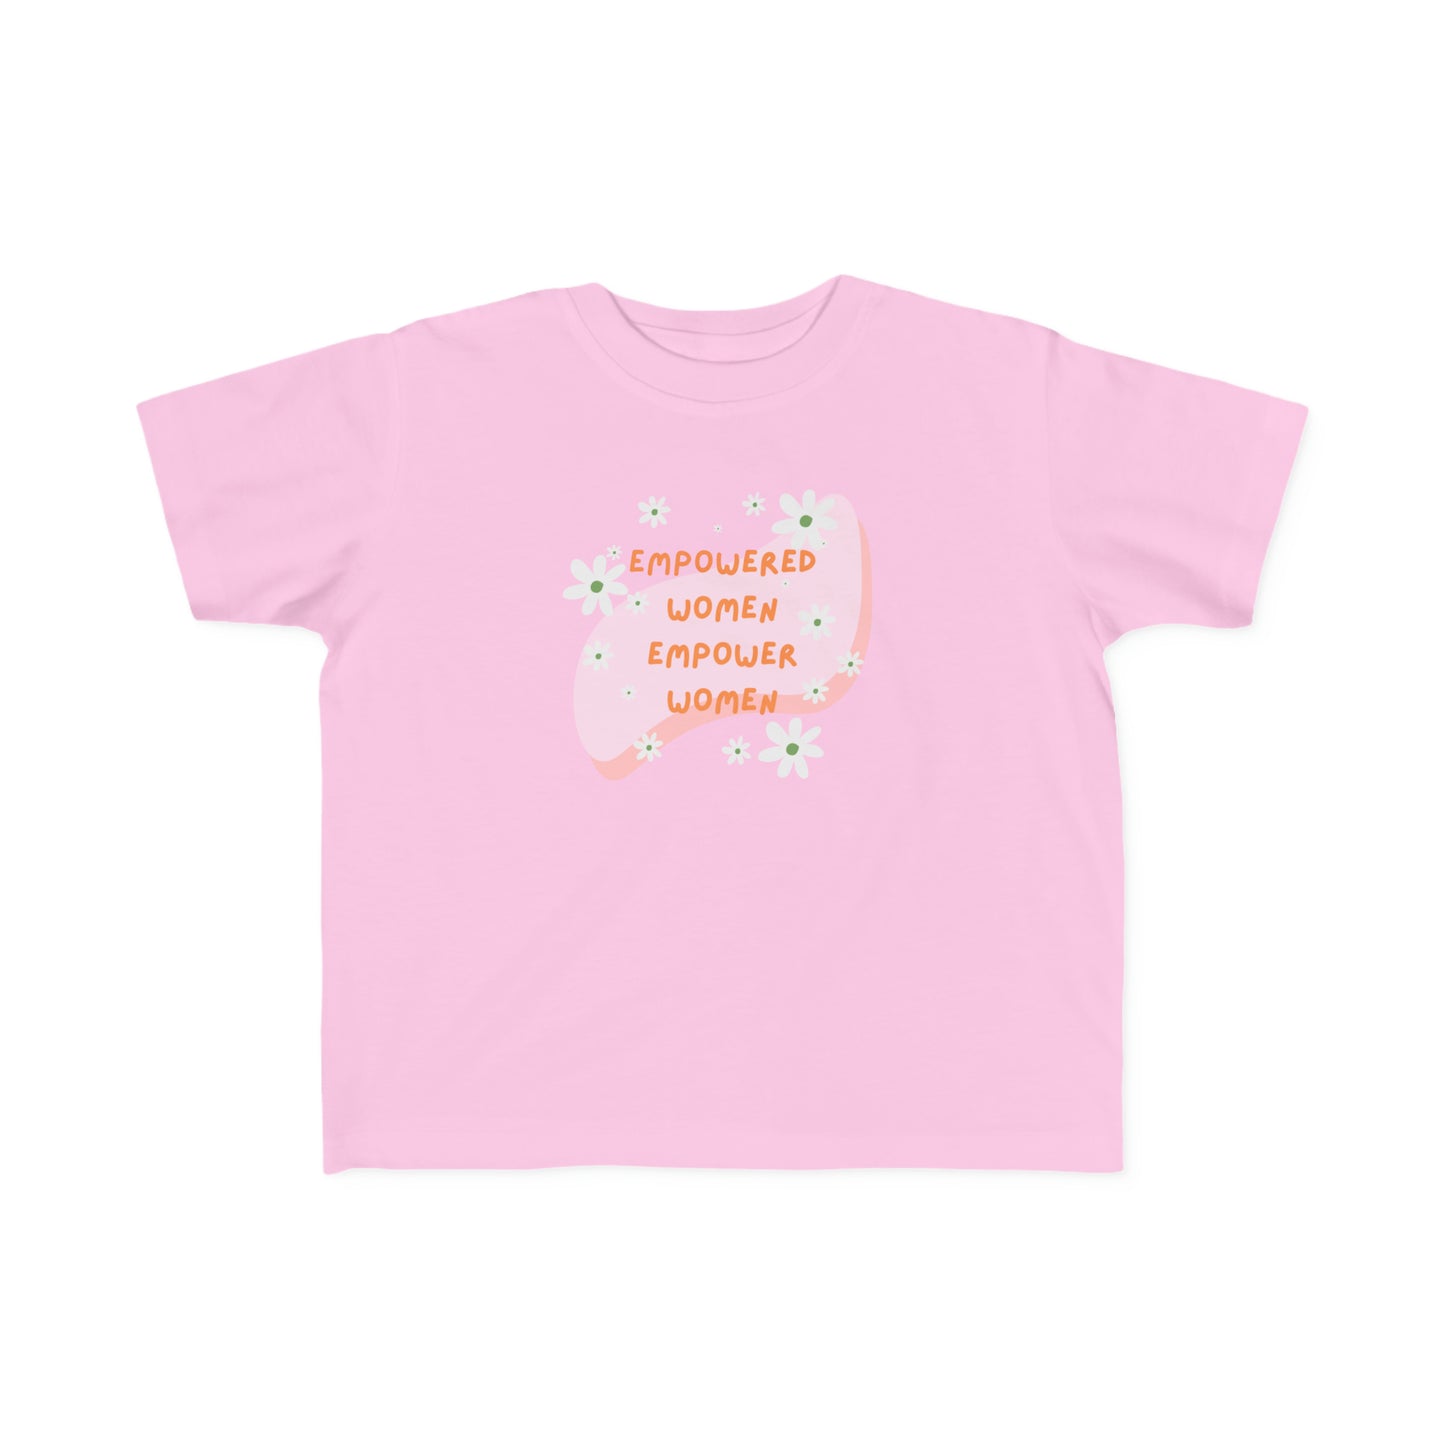 T-shirt EMPOWERED WOMEN - toddler